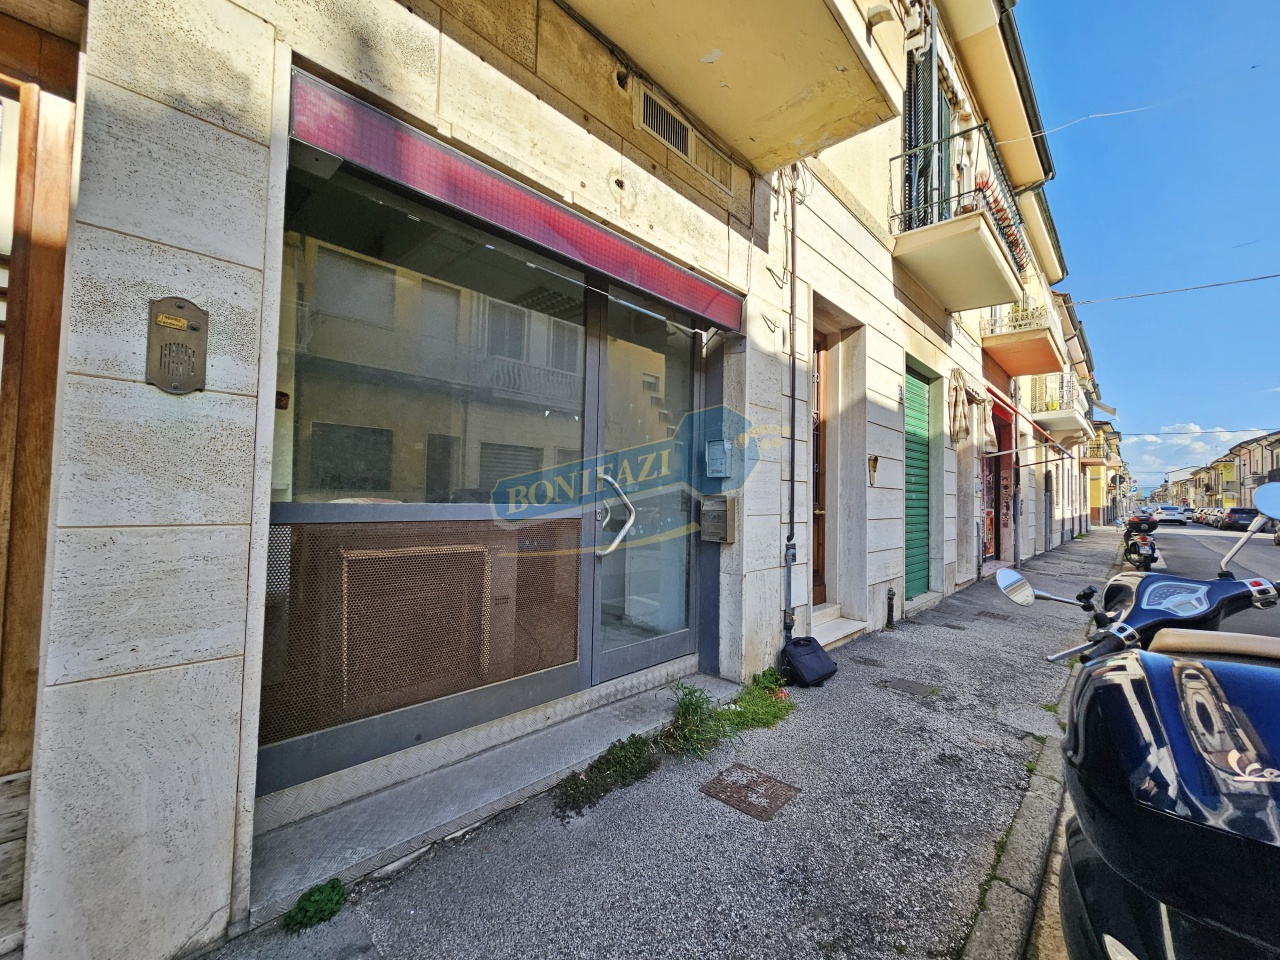 Locale commerciale in vendita a Viareggio